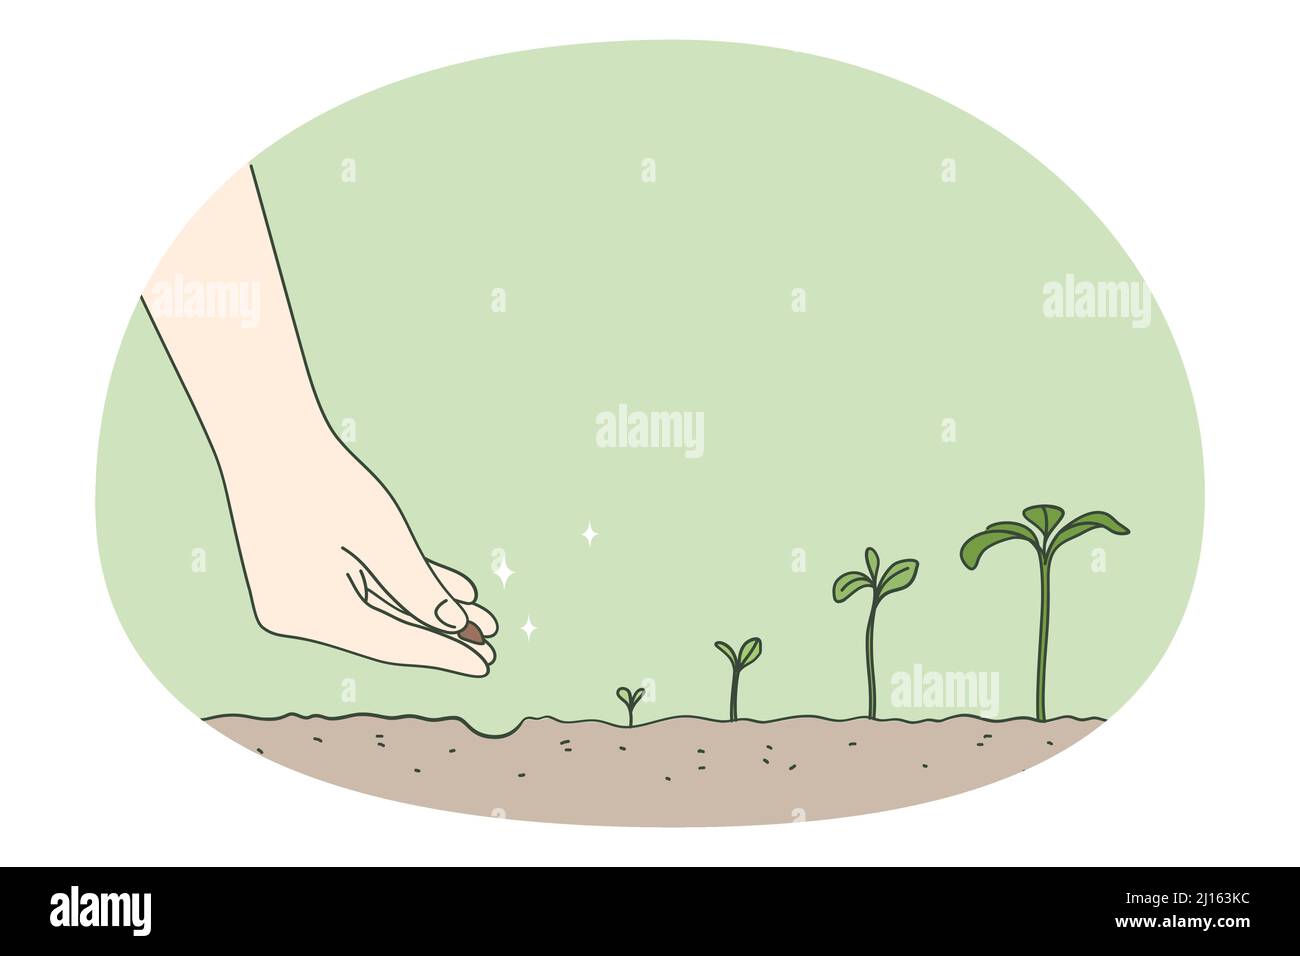 Person Hand Pflanzen Samen in Boden beobachten Baum Entwicklungsstadien. Der Gärtner hat den Sämling in den Boden gelegt. Timeline und Wachstumsmetapher. Gartenbau und Landwirtschaft Konzept. Vektorgrafik. Stock Vektor